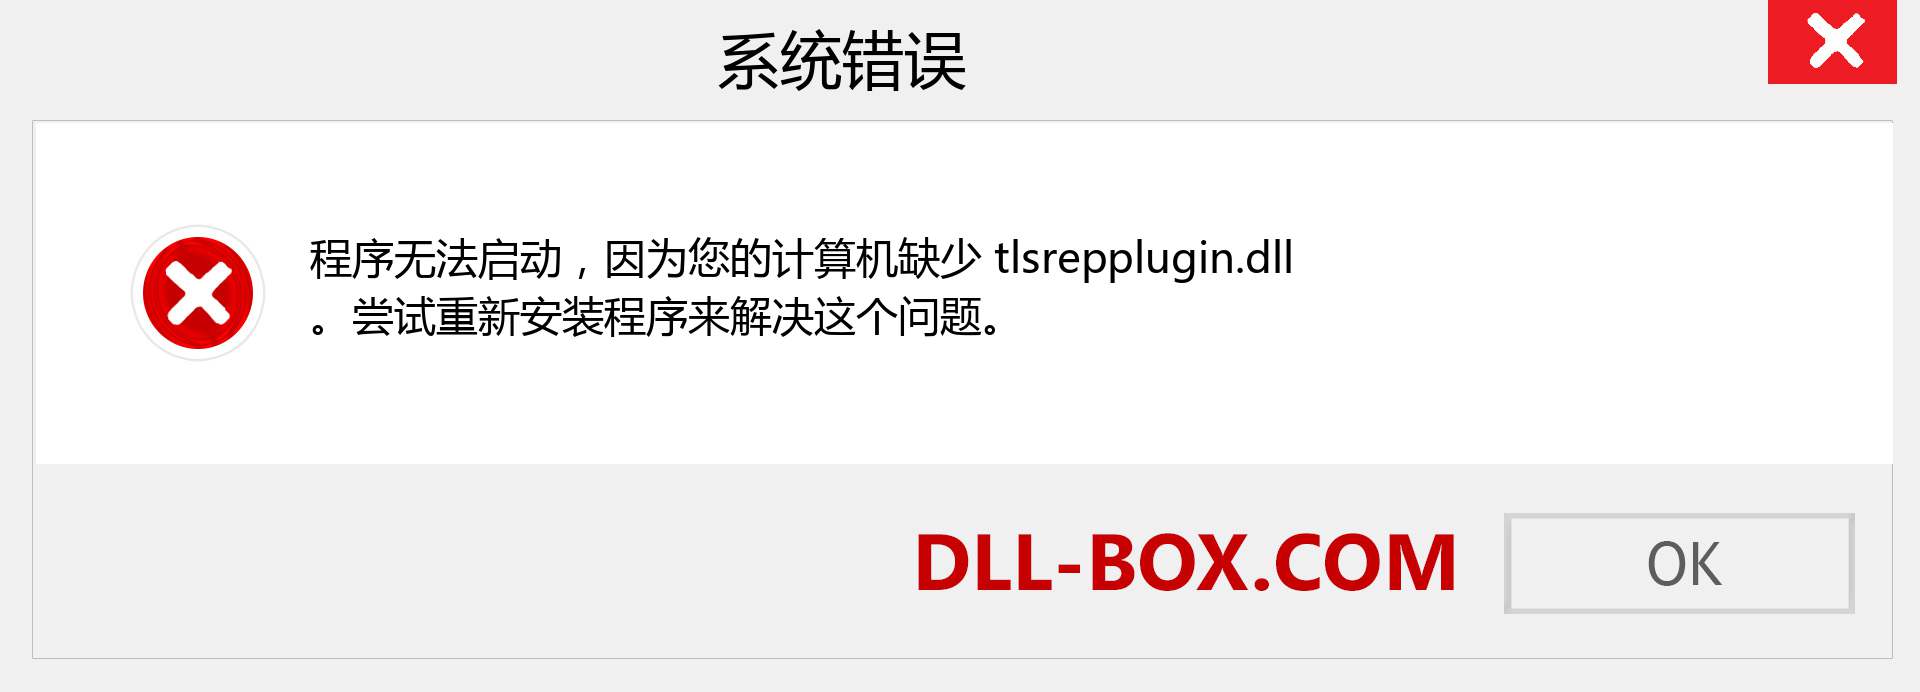 tlsrepplugin.dll 文件丢失？。 适用于 Windows 7、8、10 的下载 - 修复 Windows、照片、图像上的 tlsrepplugin dll 丢失错误